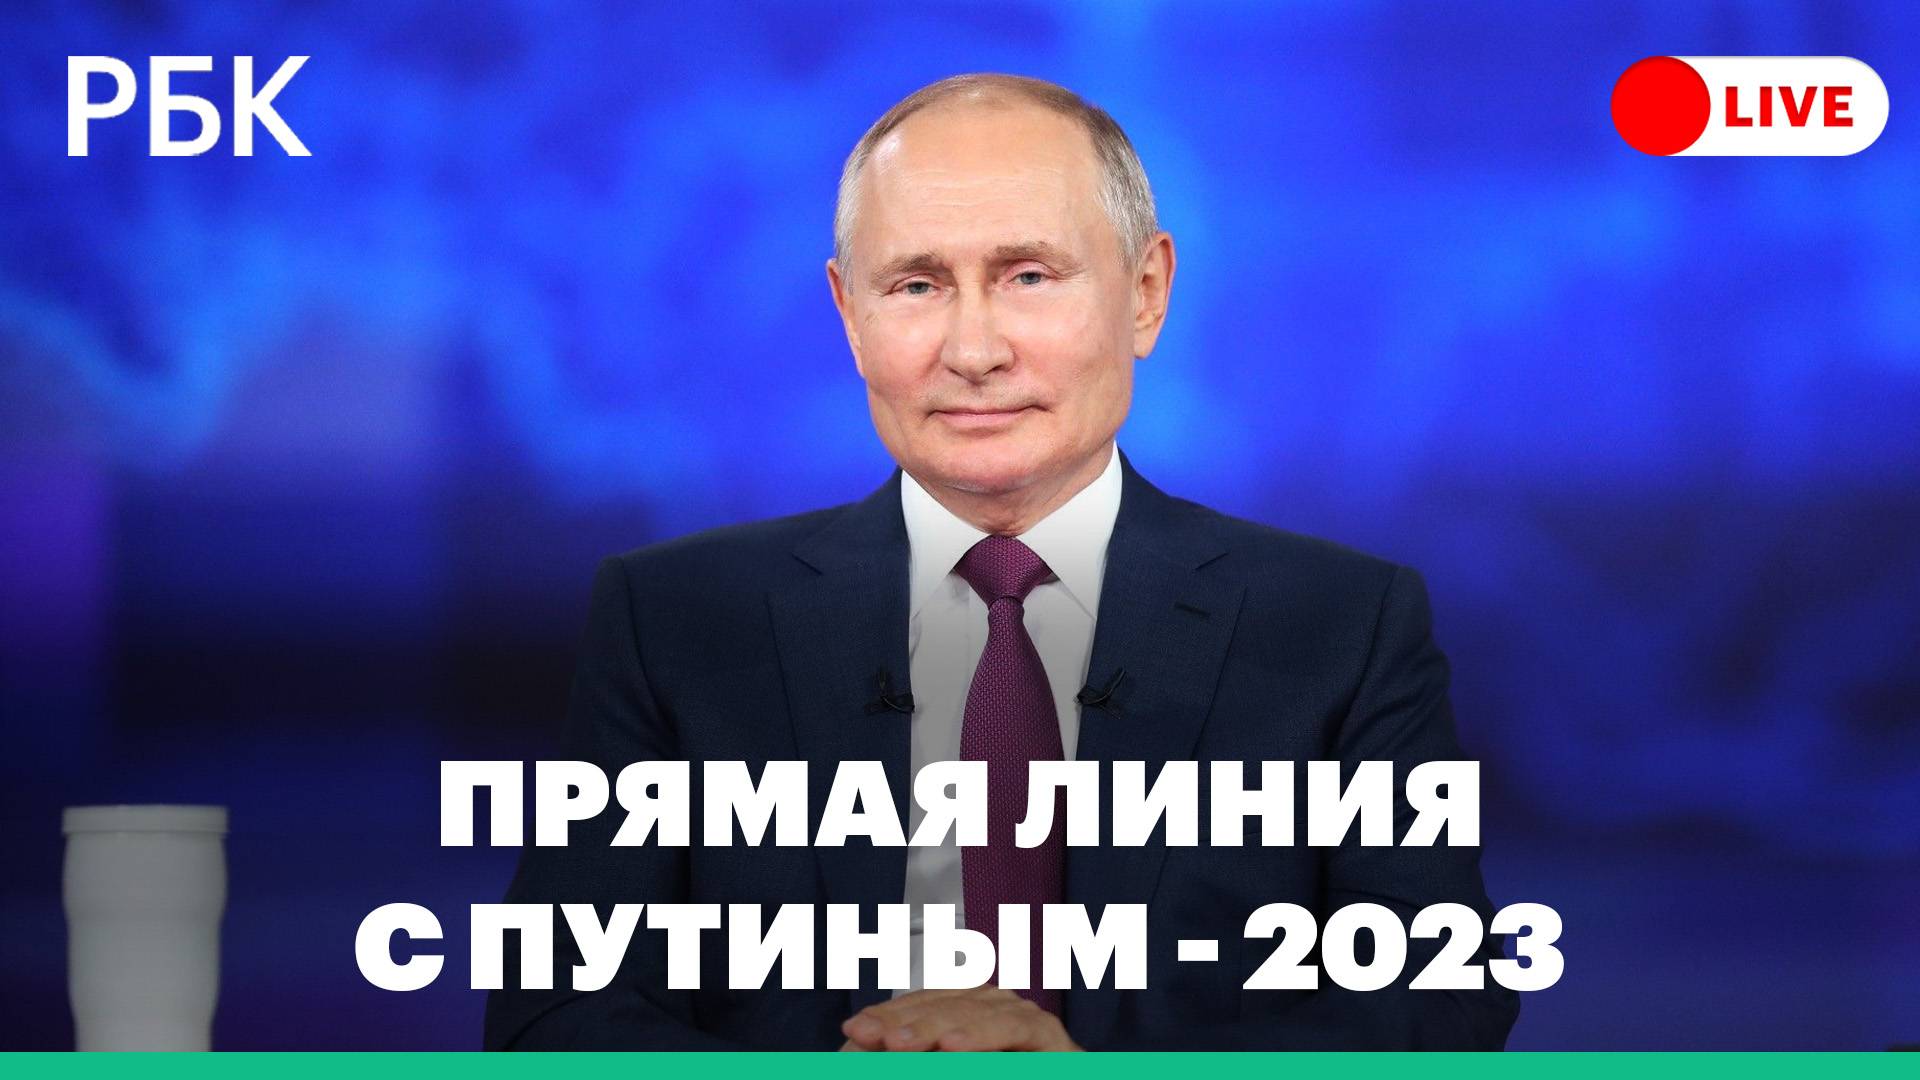 Прямая линия с Путиным - 2023. Прямая трансляция большой пресс-конференции президента России